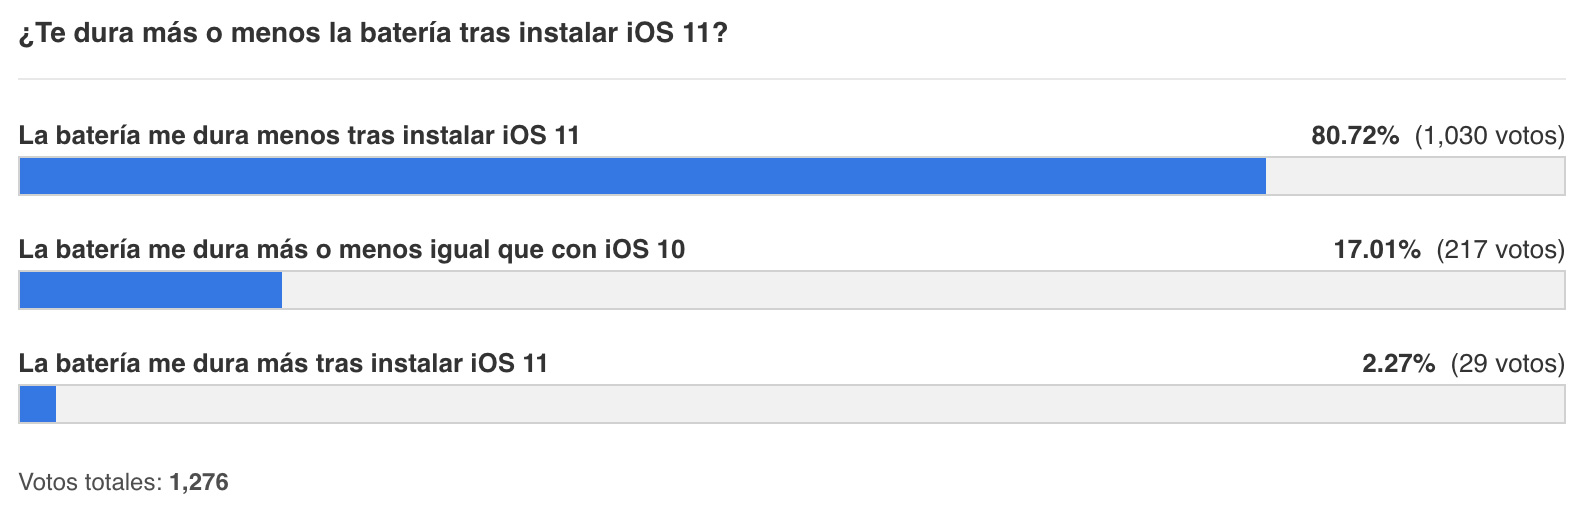 Resultados de la encuesta sobre duración de batería de iOS 11